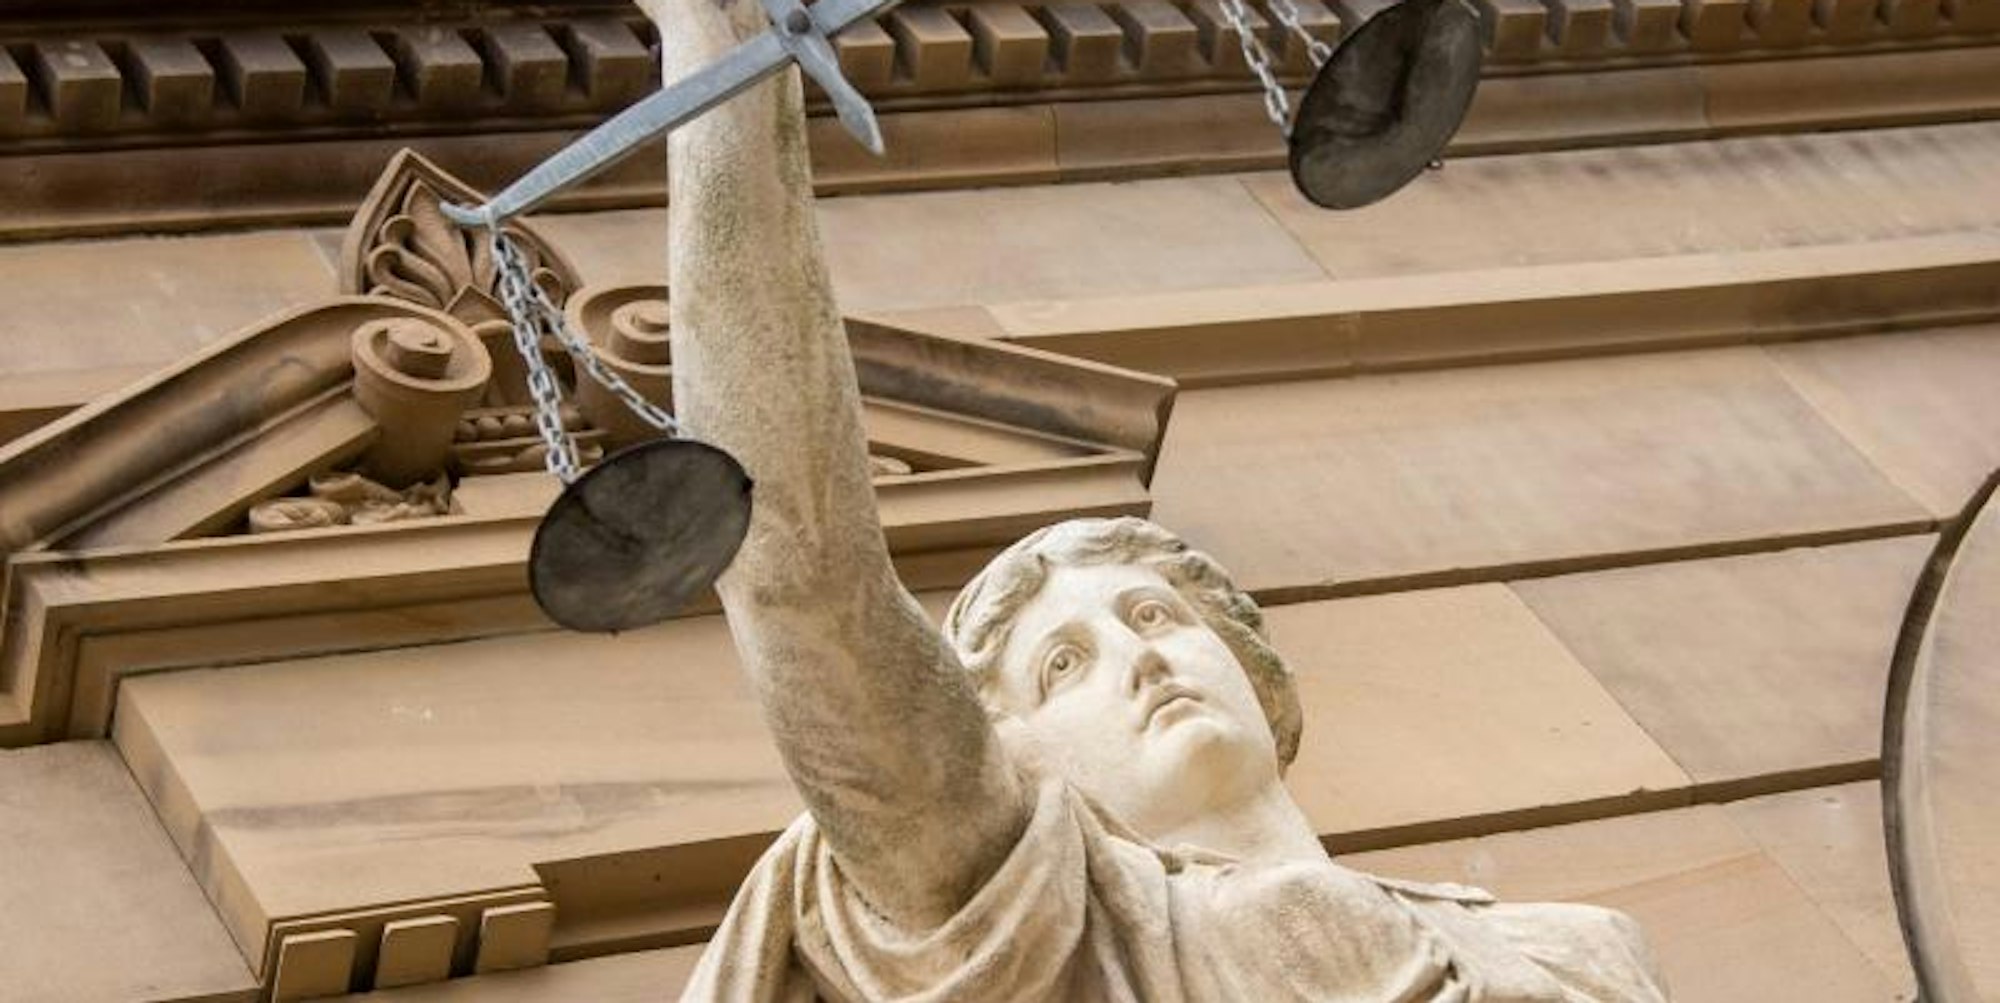 Vor dem Landgericht hält eine Statue der Justitia eine Waagschale.